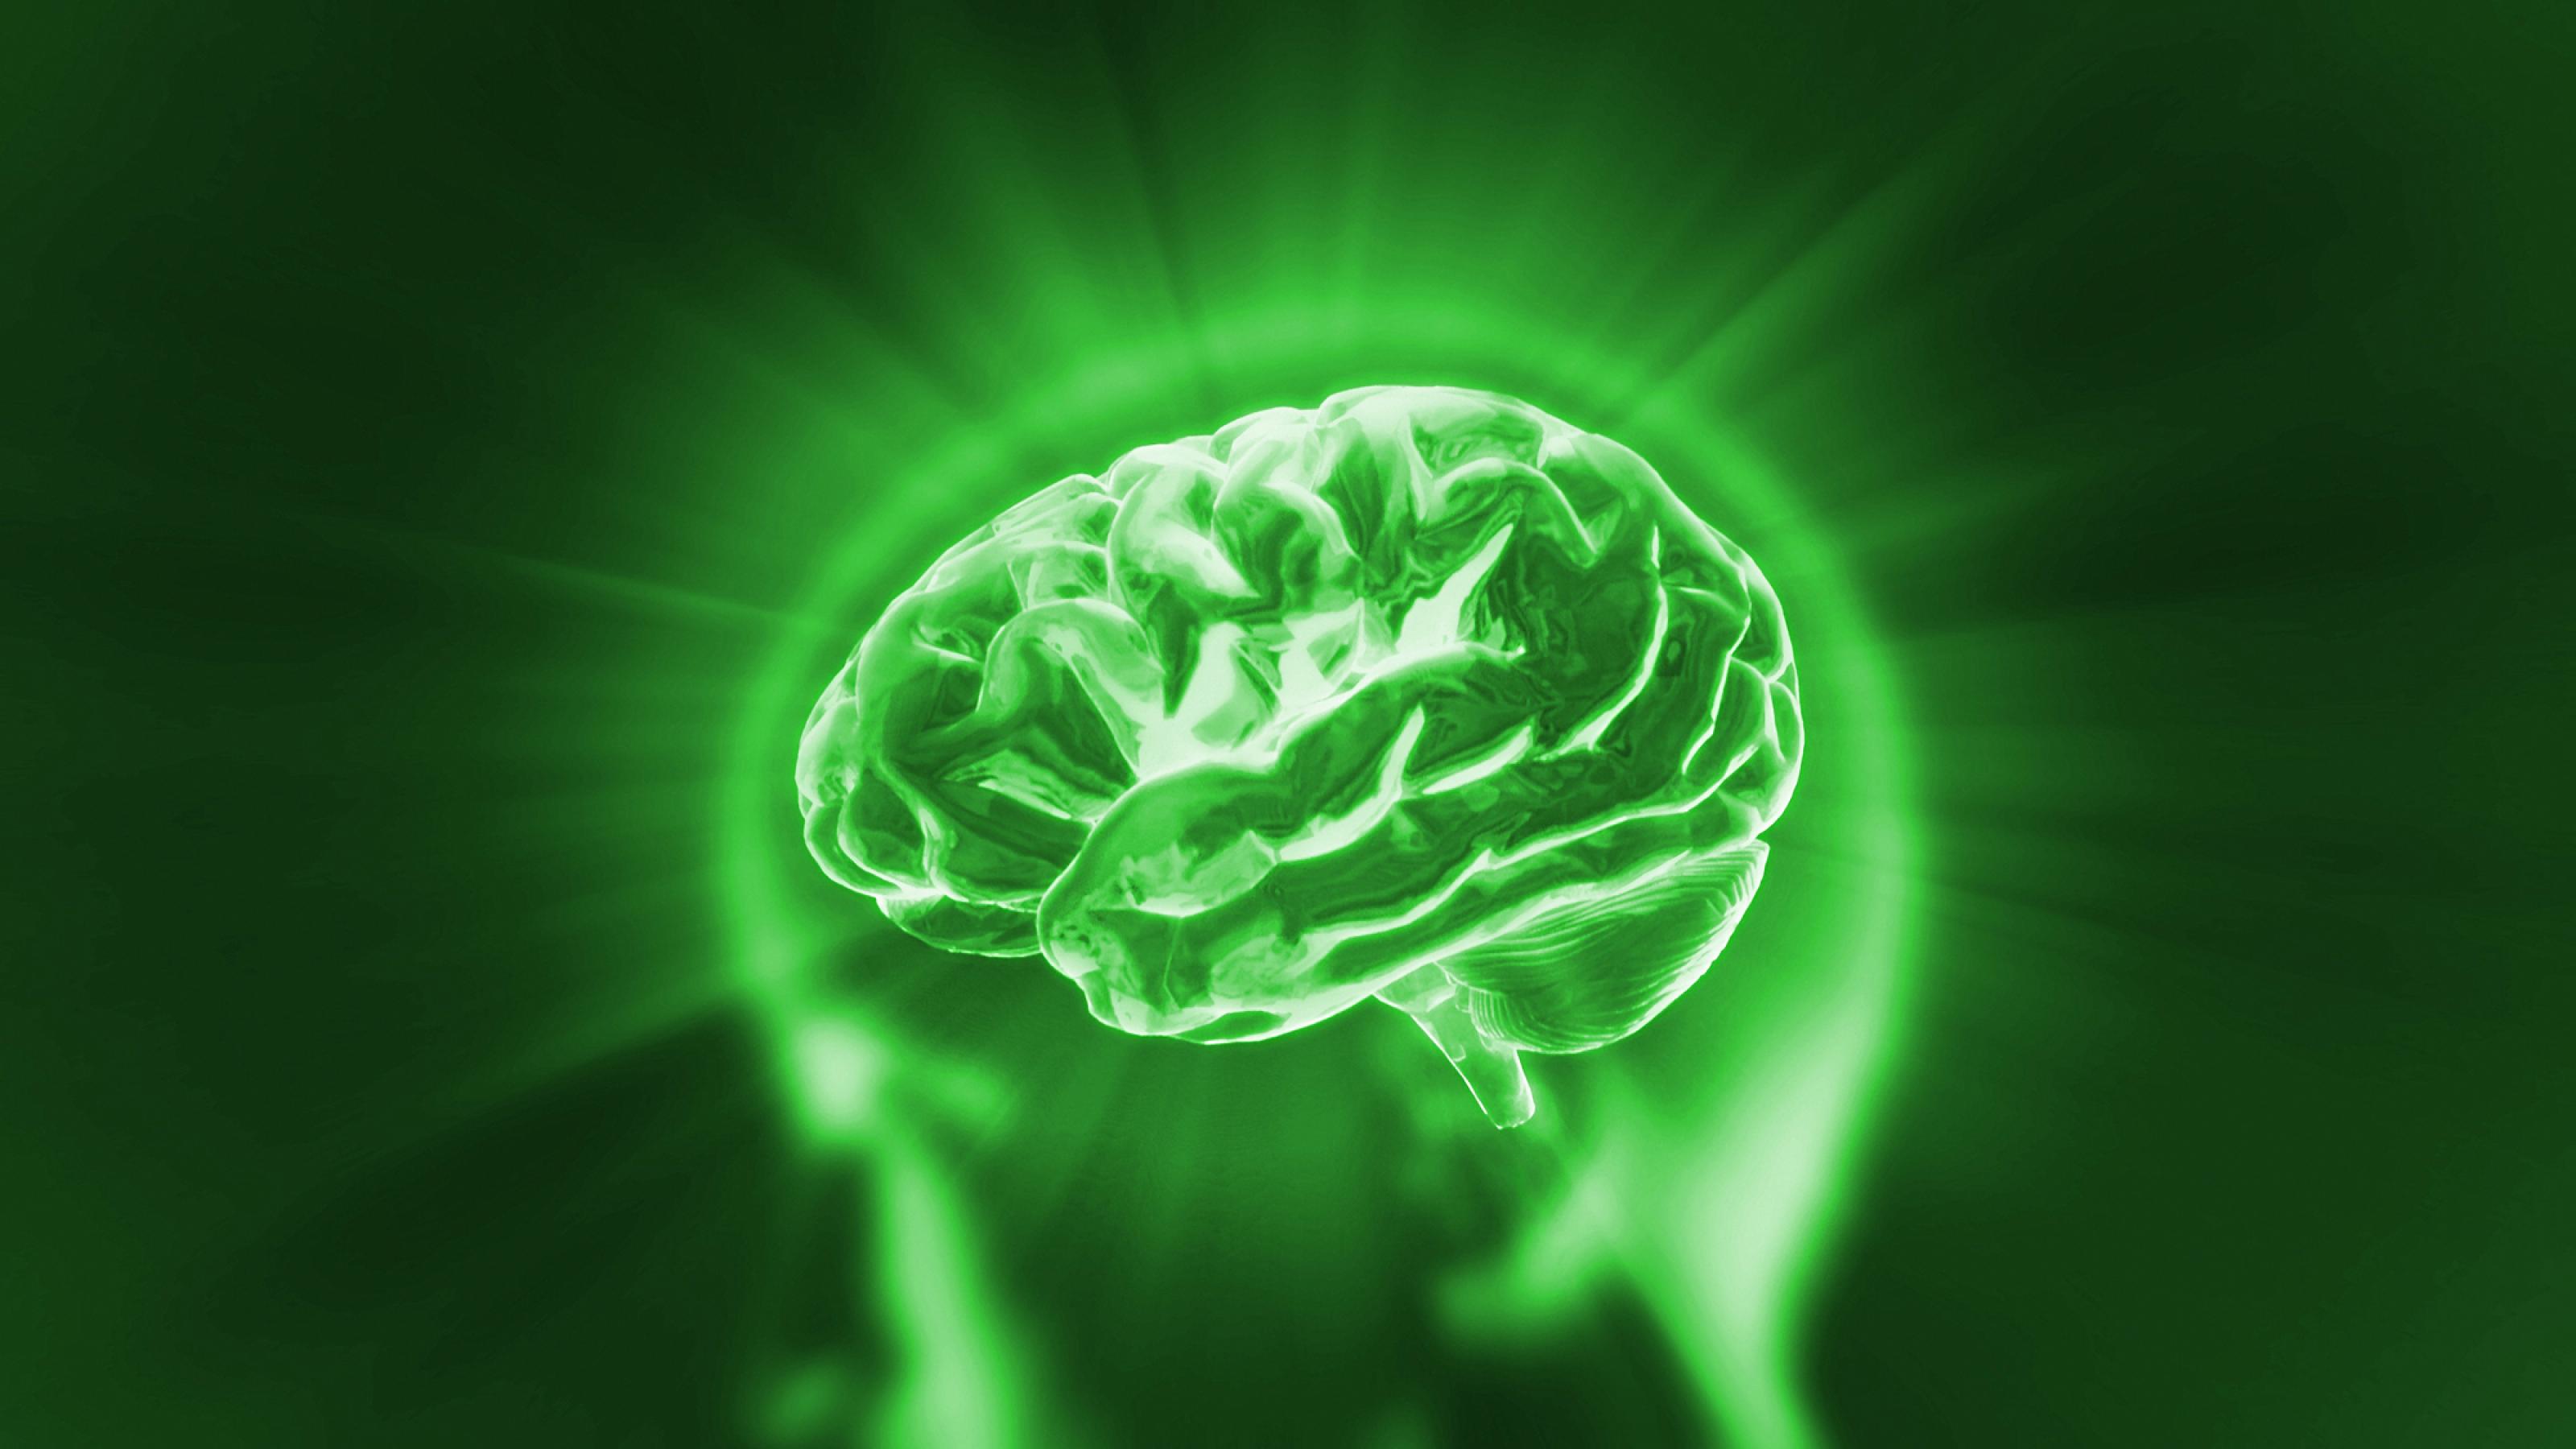 Künstlerisches Bild eines grünen Gehirns als Symbol für grüne, also energieeffiziente KI.